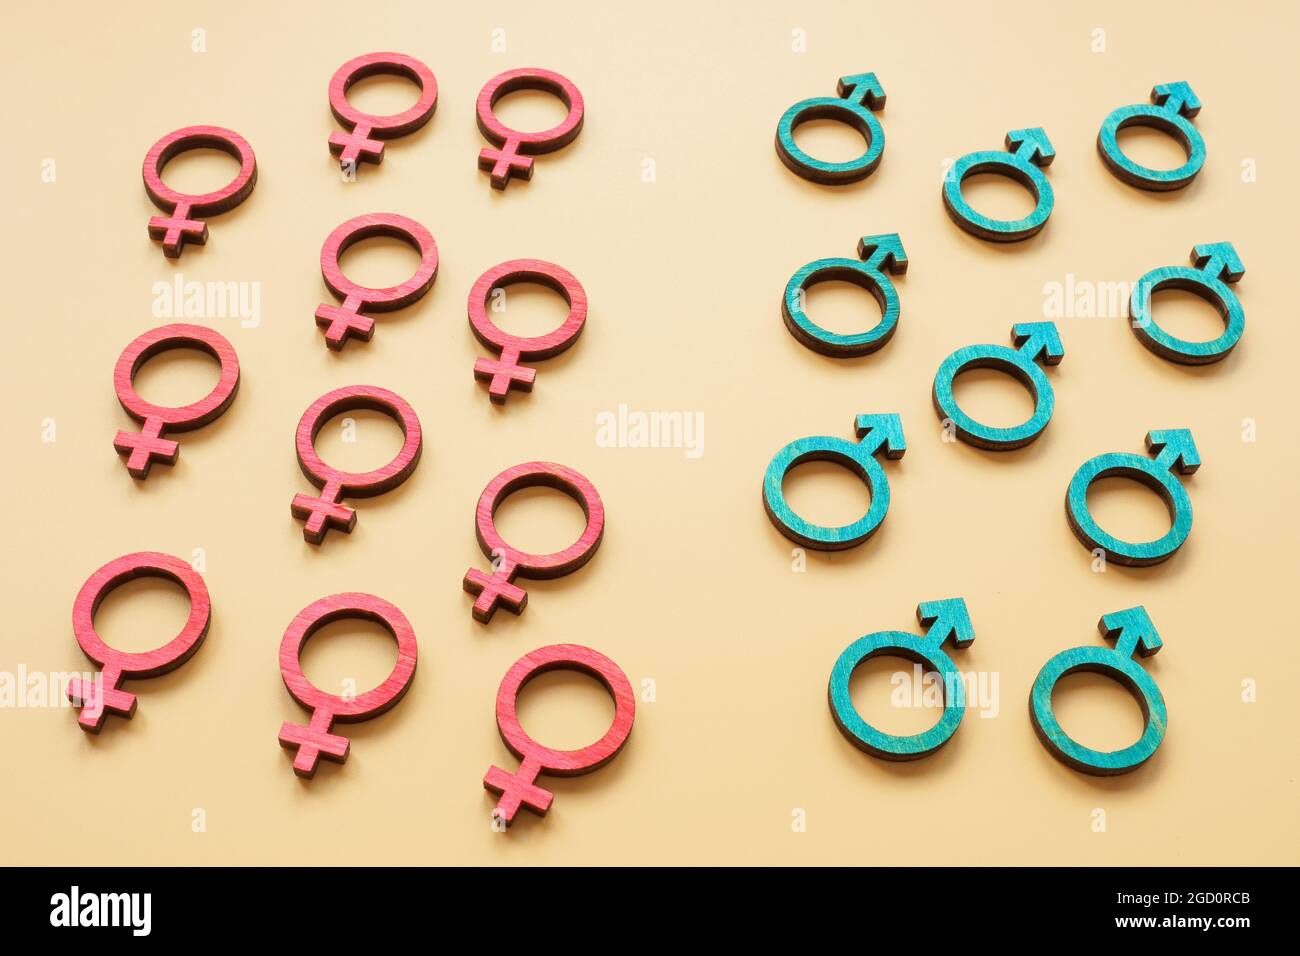 Simboli di sesso maschile e femminile. Concetto di uguaglianza. Foto Stock